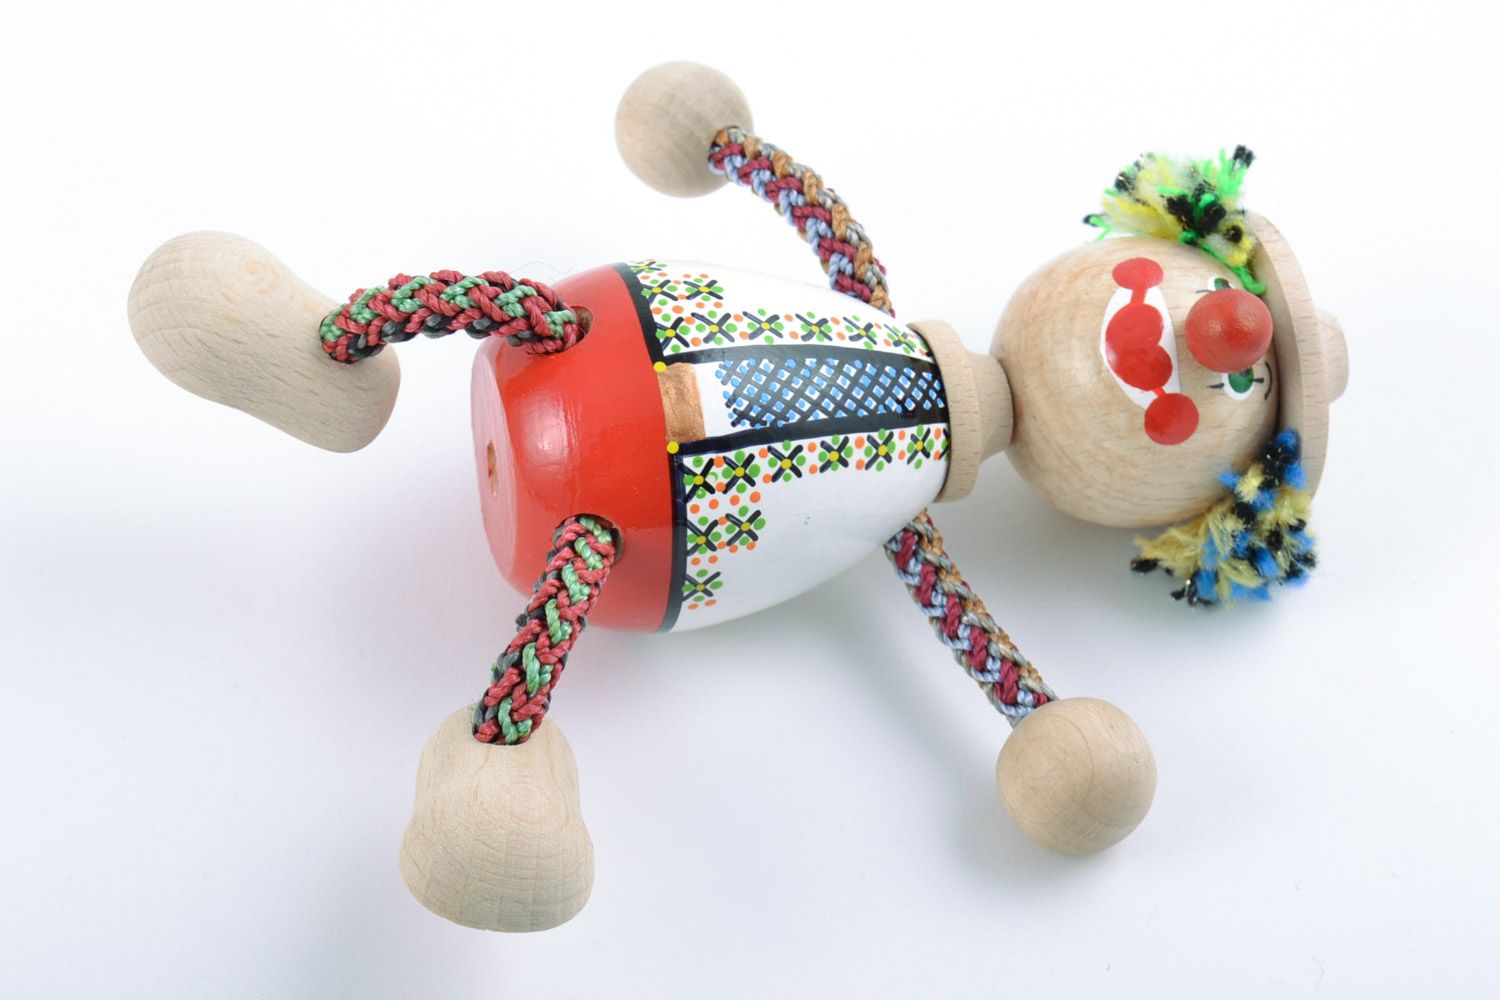 Детская игрушка из дерева расписанная красками ручной работы в виде яркого клоуна фото 4